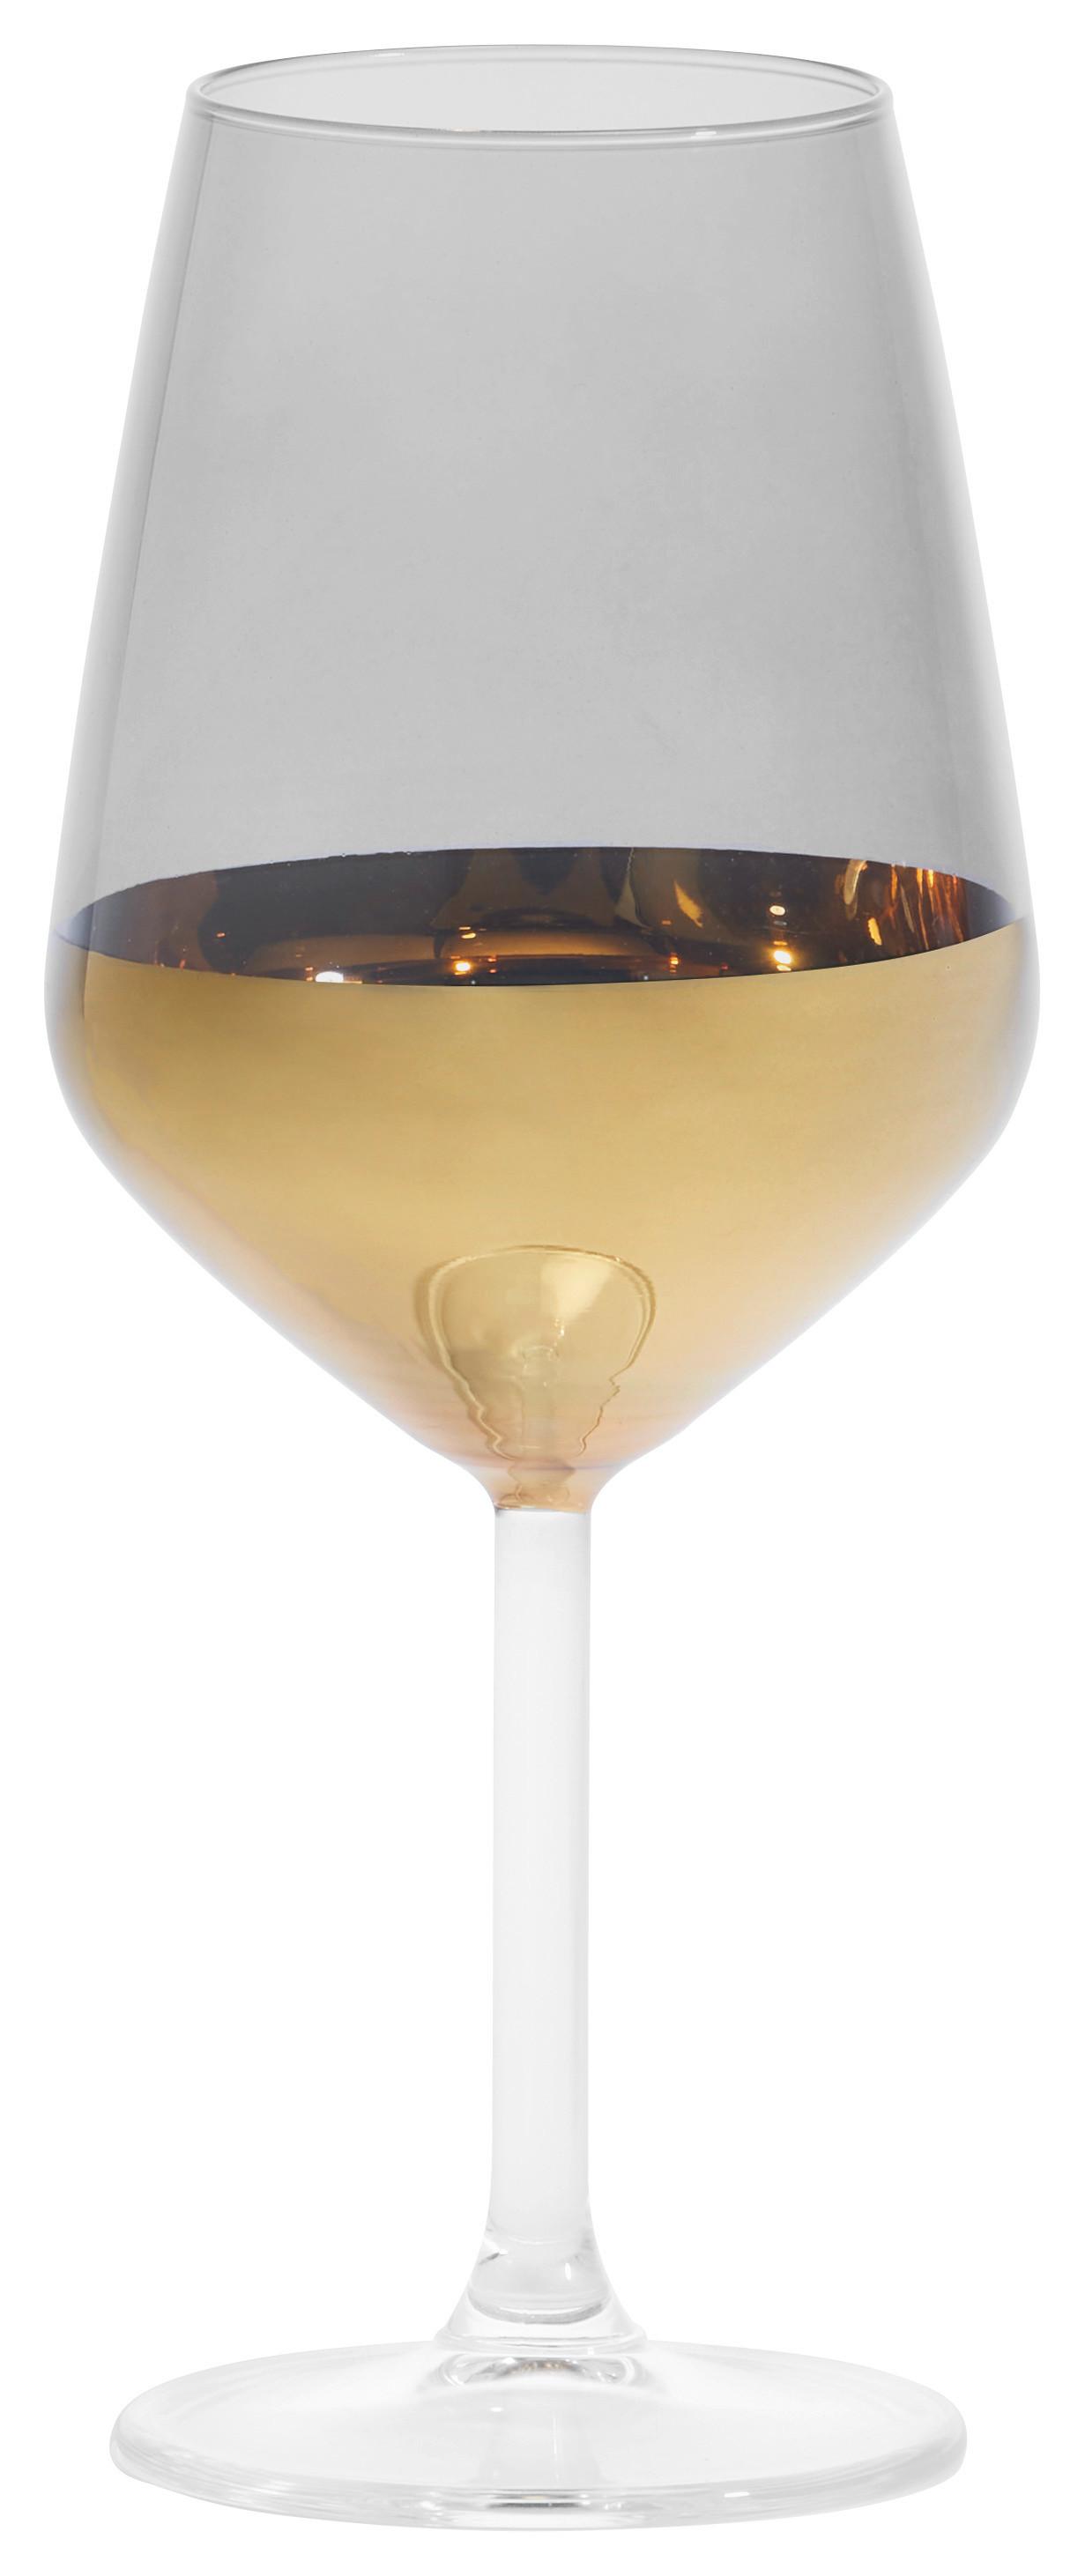 Weinglas Glamour in Schwarz/Goldfarben ca.490ml - Goldfarben/Schwarz, Romantik / Landhaus, Glas (6,4/22cm) - Premium Living